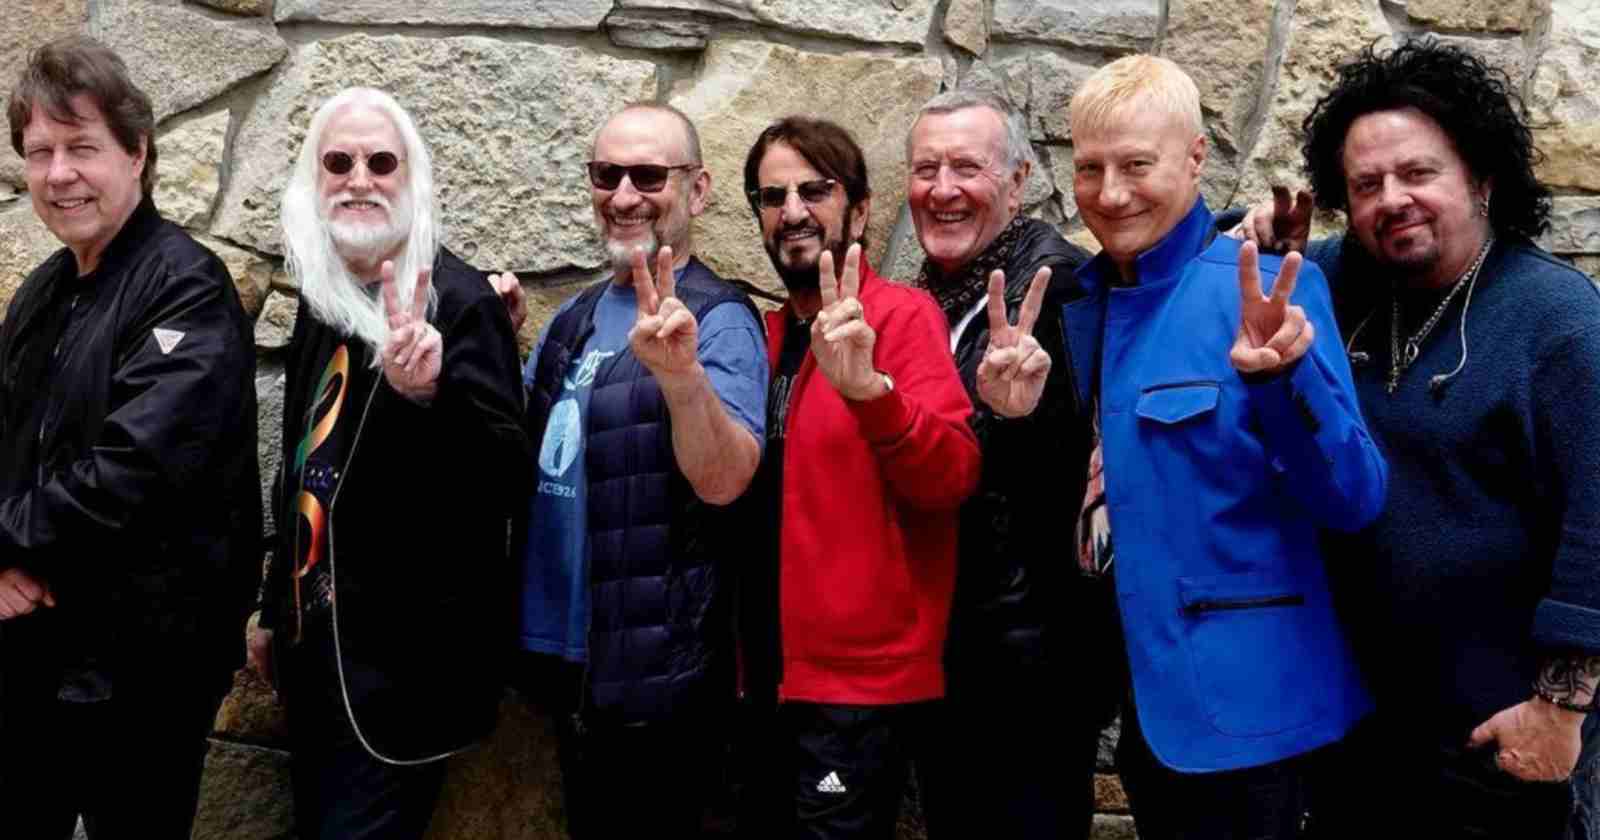 Next Ringo Starr 2022 tour dates